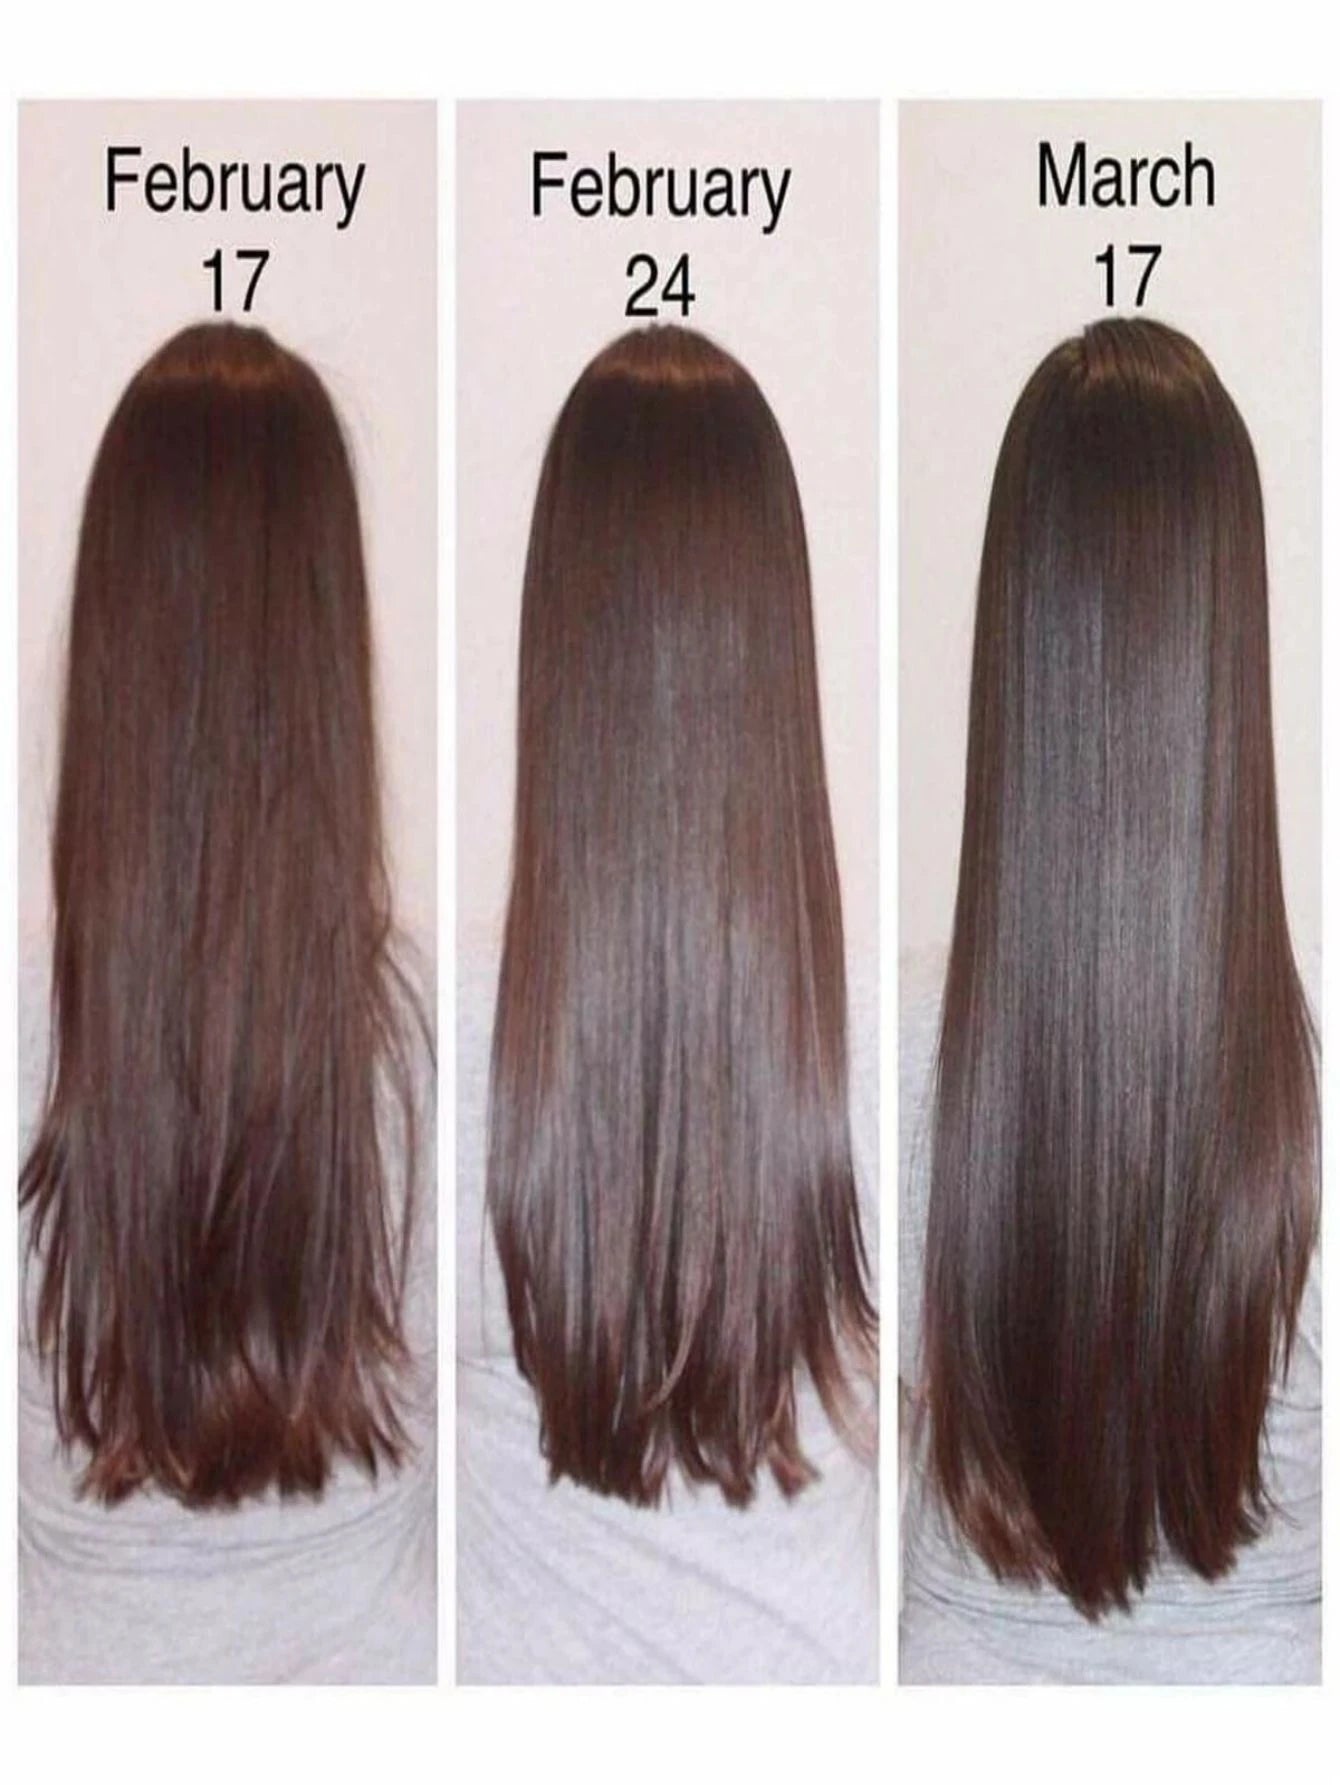 5ML/15ML/30ML/50ML Hair Growth Serum Anti Preventing Hair Loss Alopecia Liquid Damaged Hair Repair Growing Faster